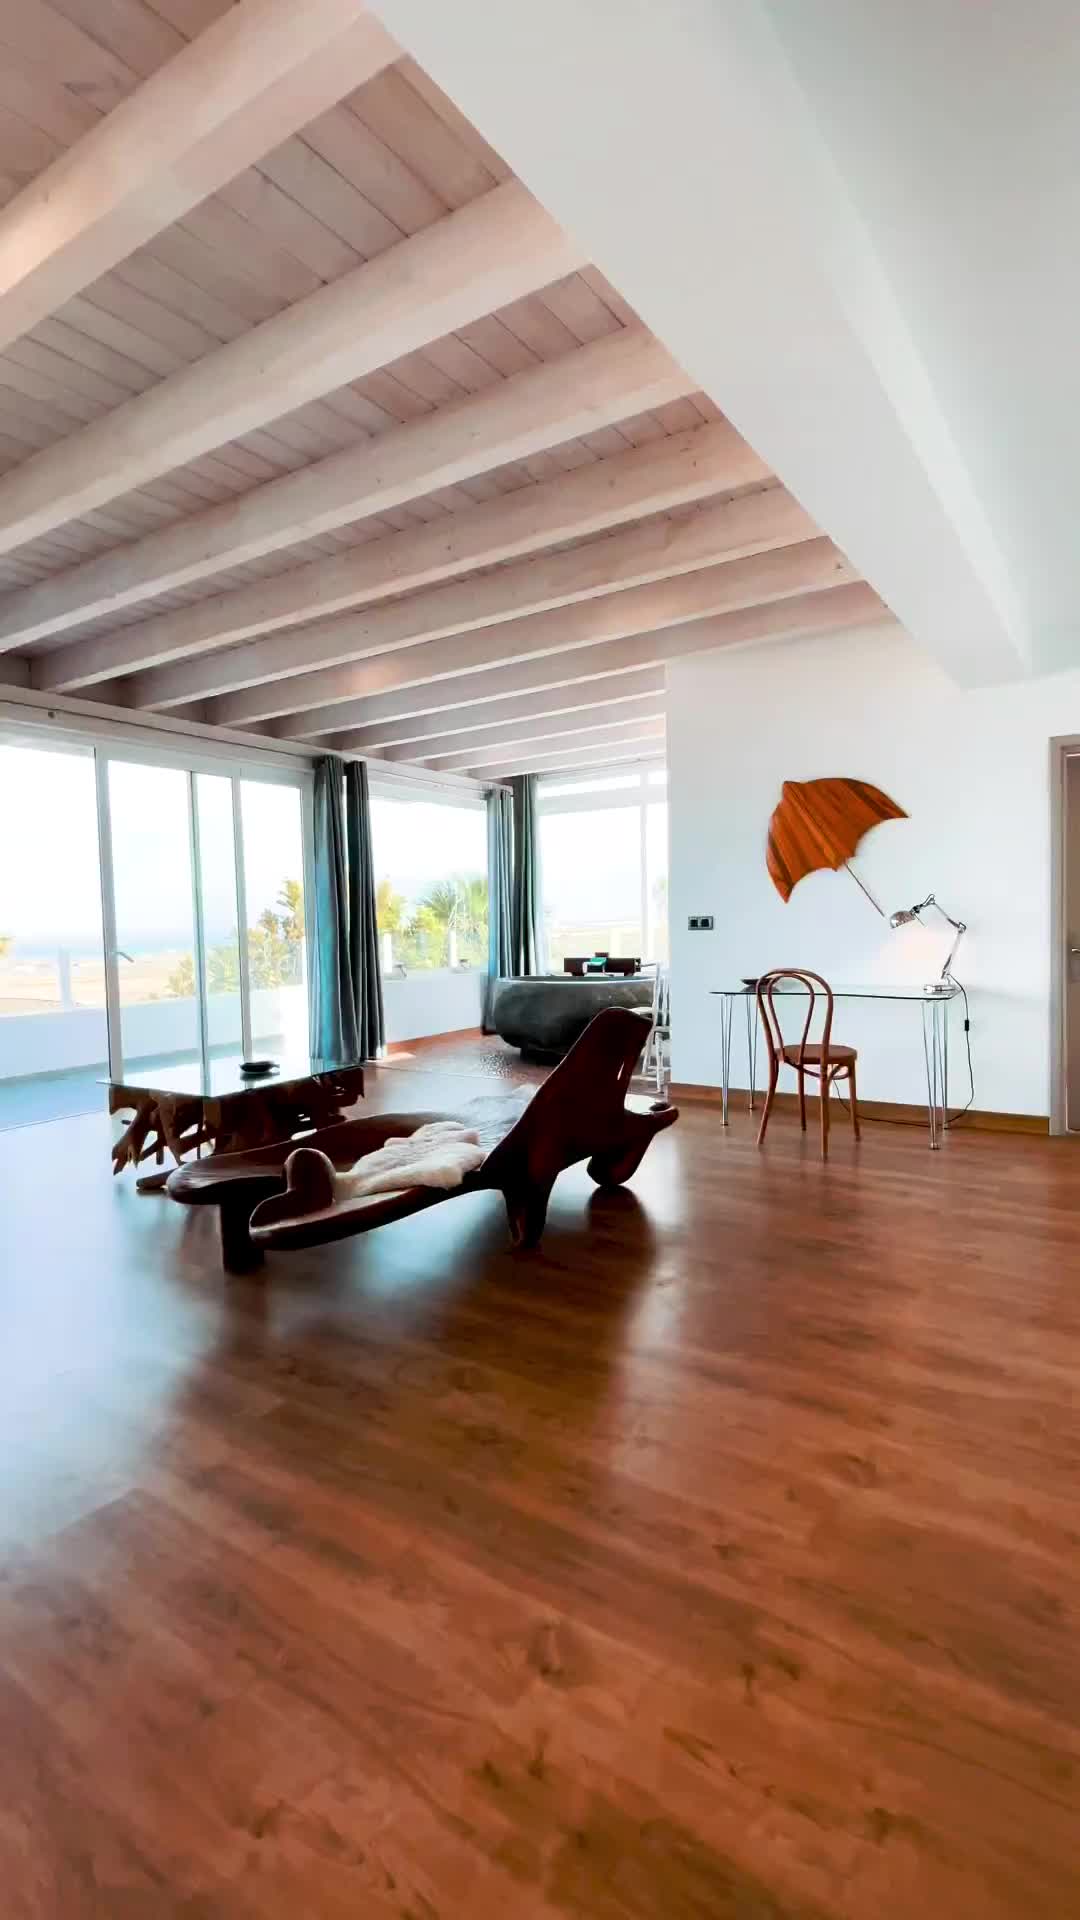 Luxurious Principal Bedroom with Sea Views in Lanzarote